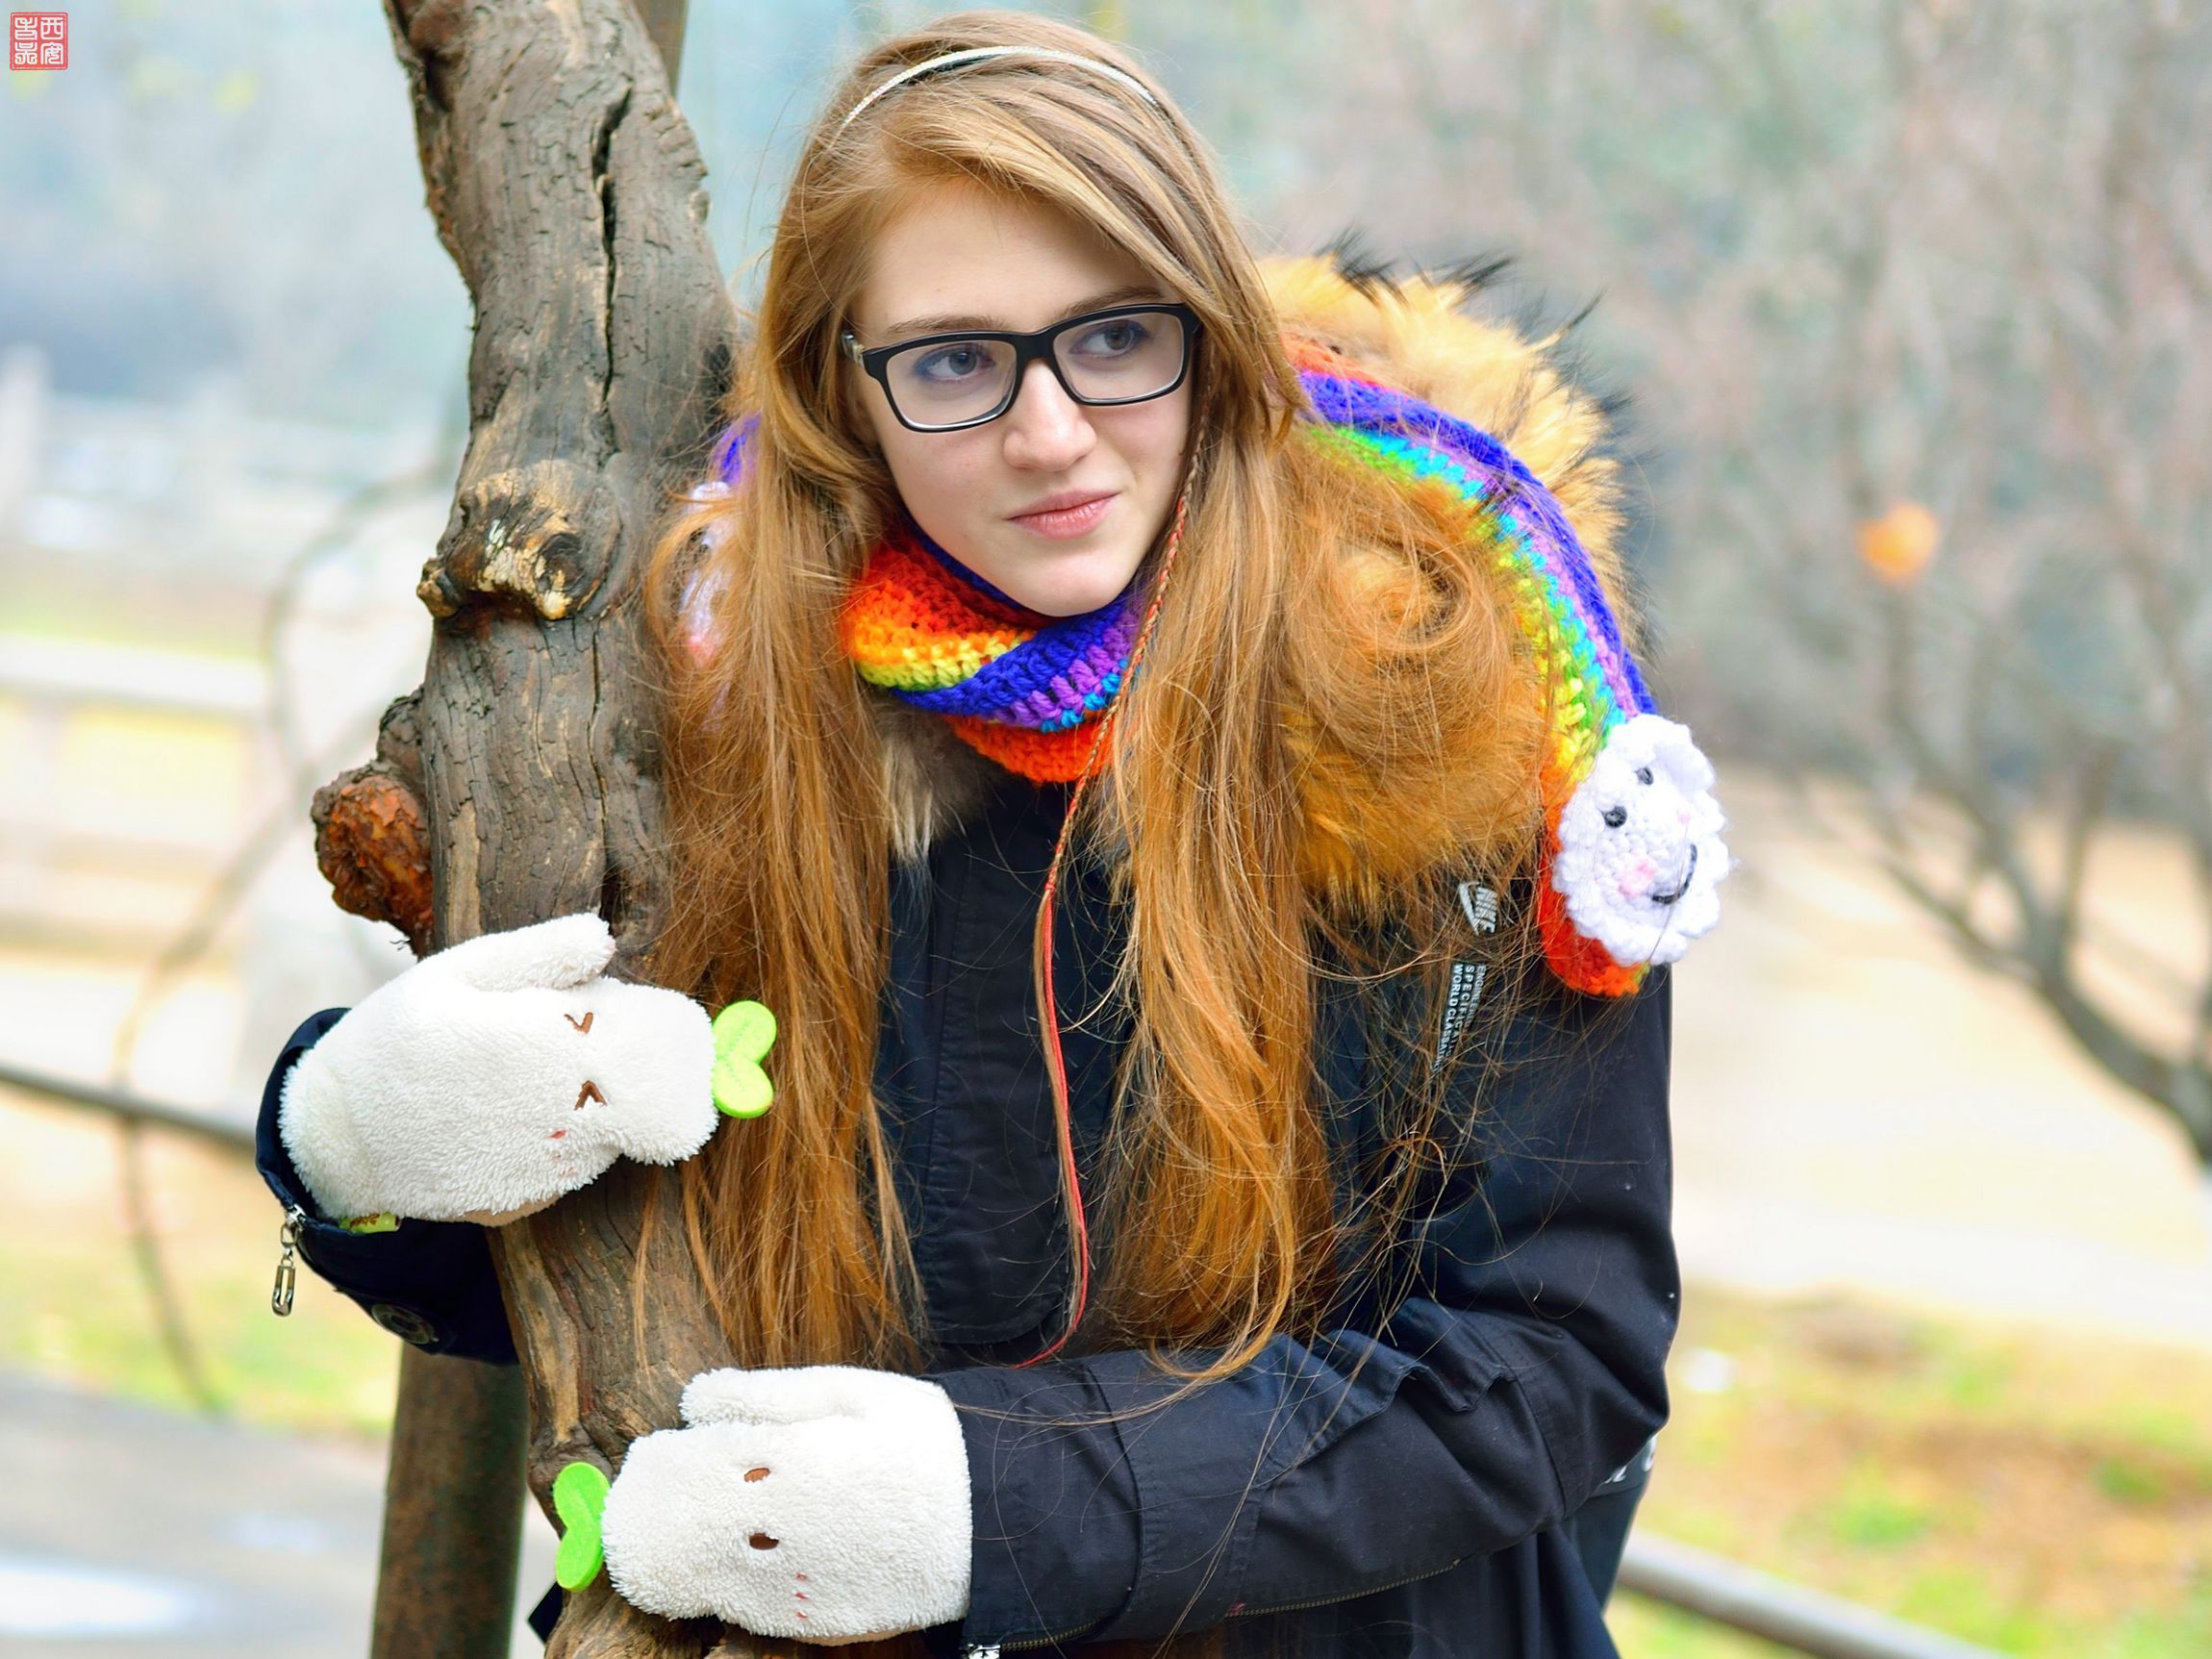 乌克兰美女留学生图片